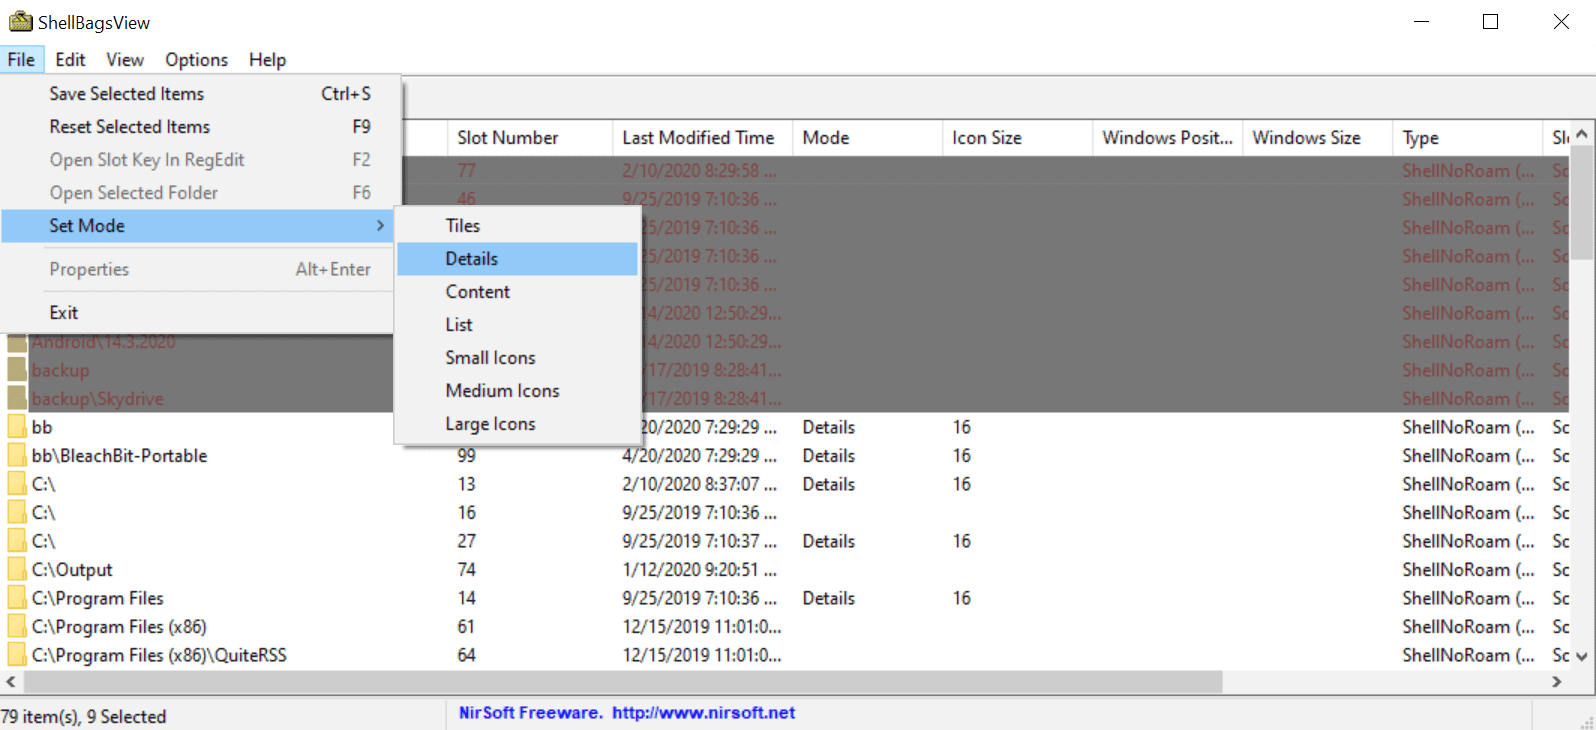 shellbagsview multiple folders